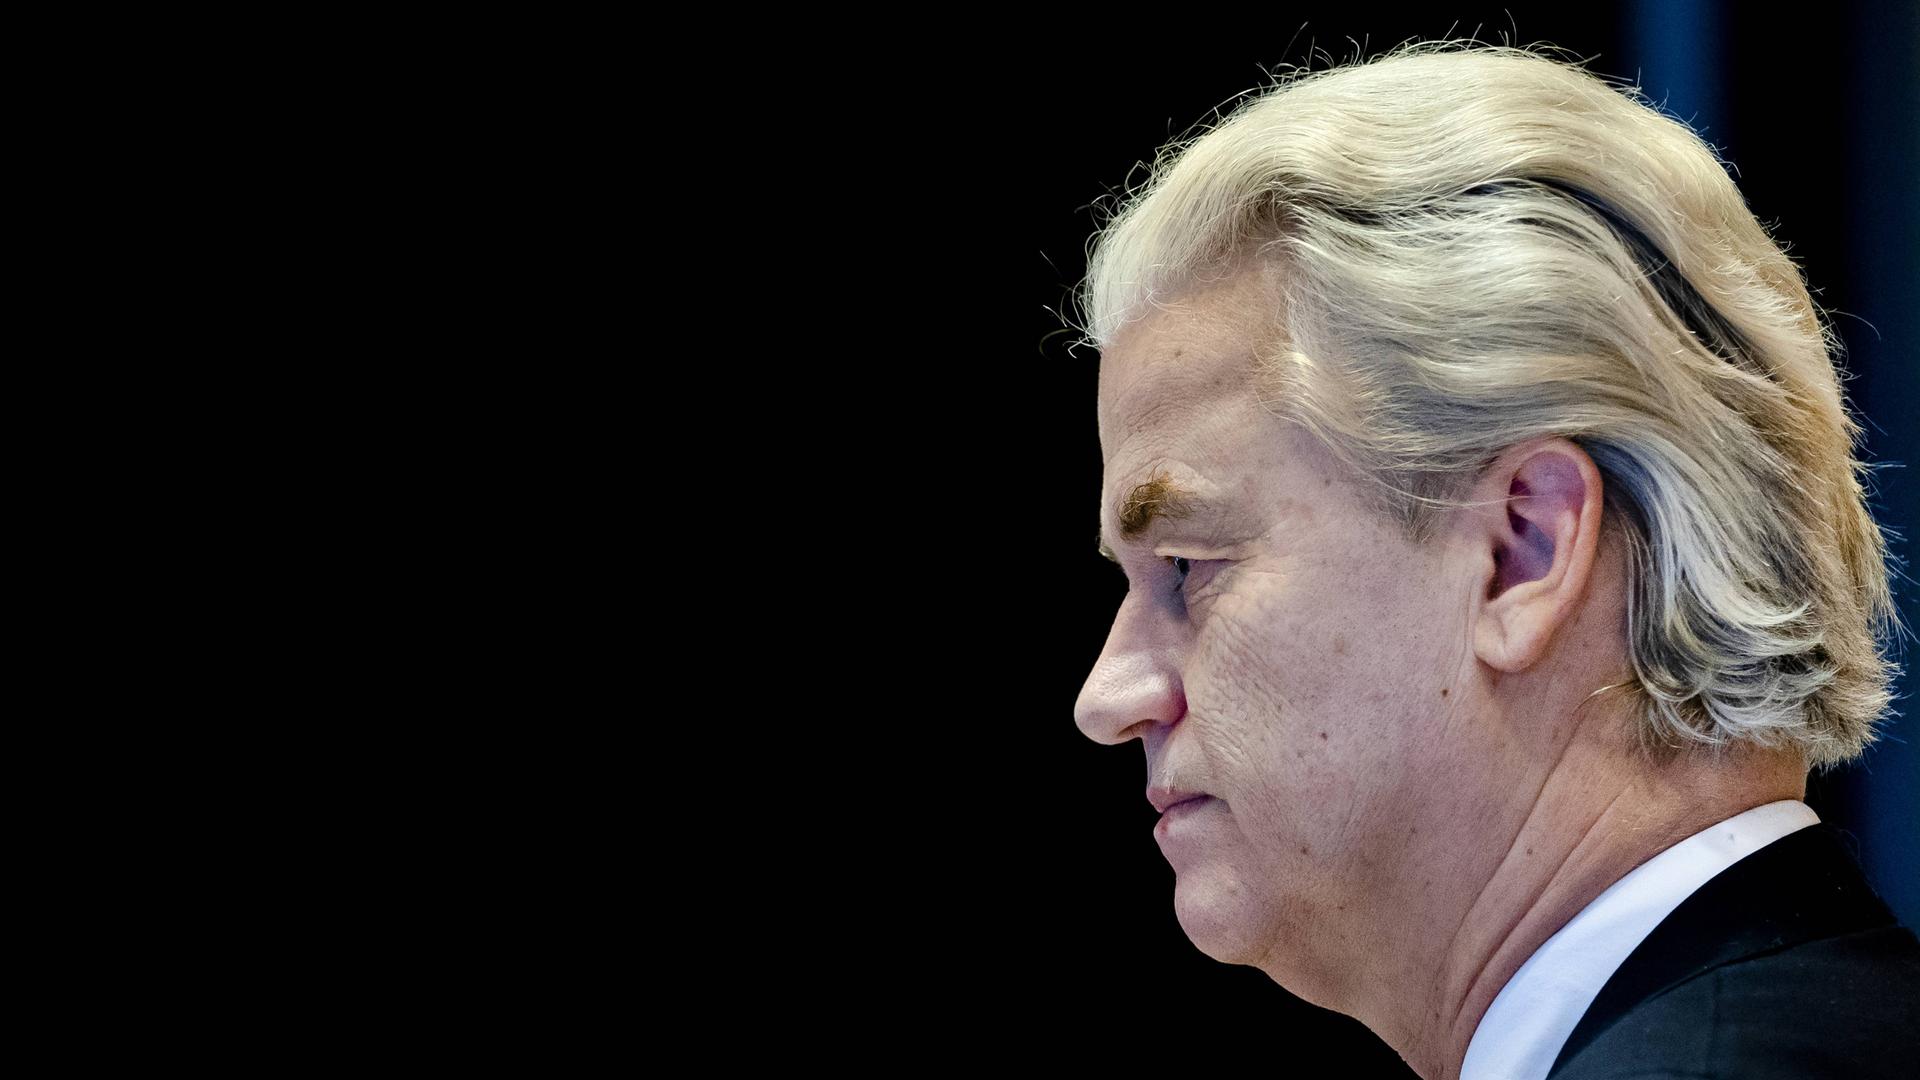 Der niederländische Wahlsieger Geert Wilders im Profil